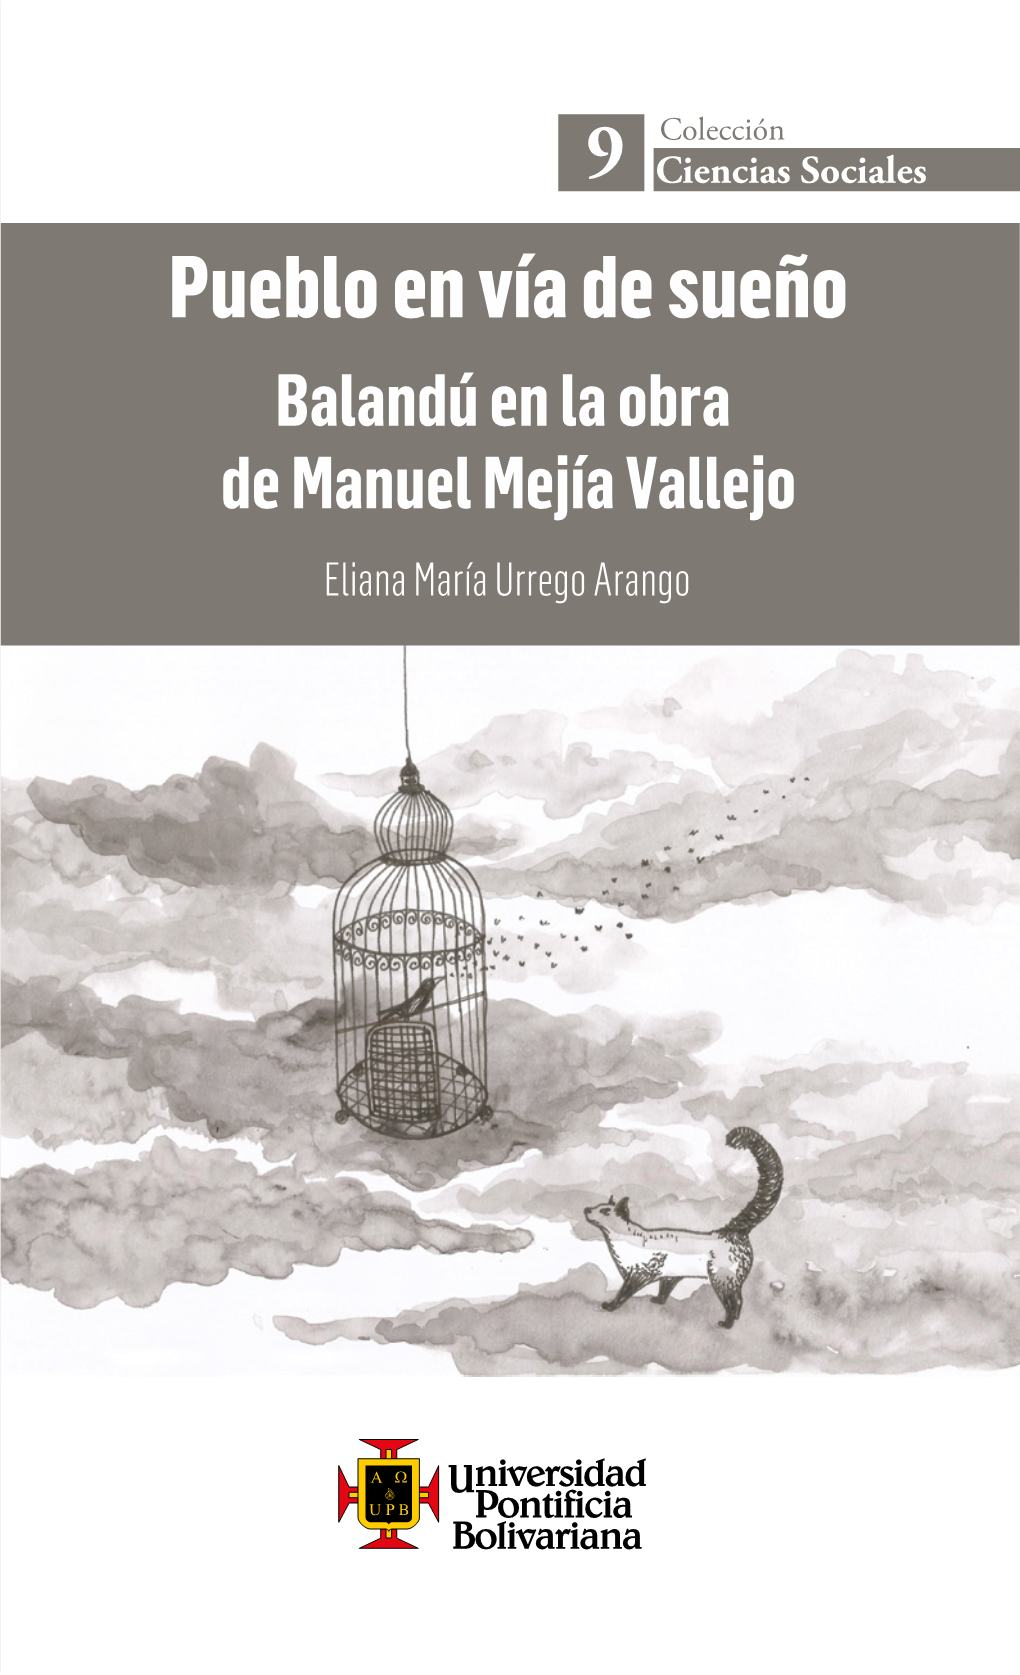 Eliana María Urrego Arango Colección “Estas Son Las Primeras Historias De Balandú, Pueblo En 9 Ciencias Sociales Vía De Sueño